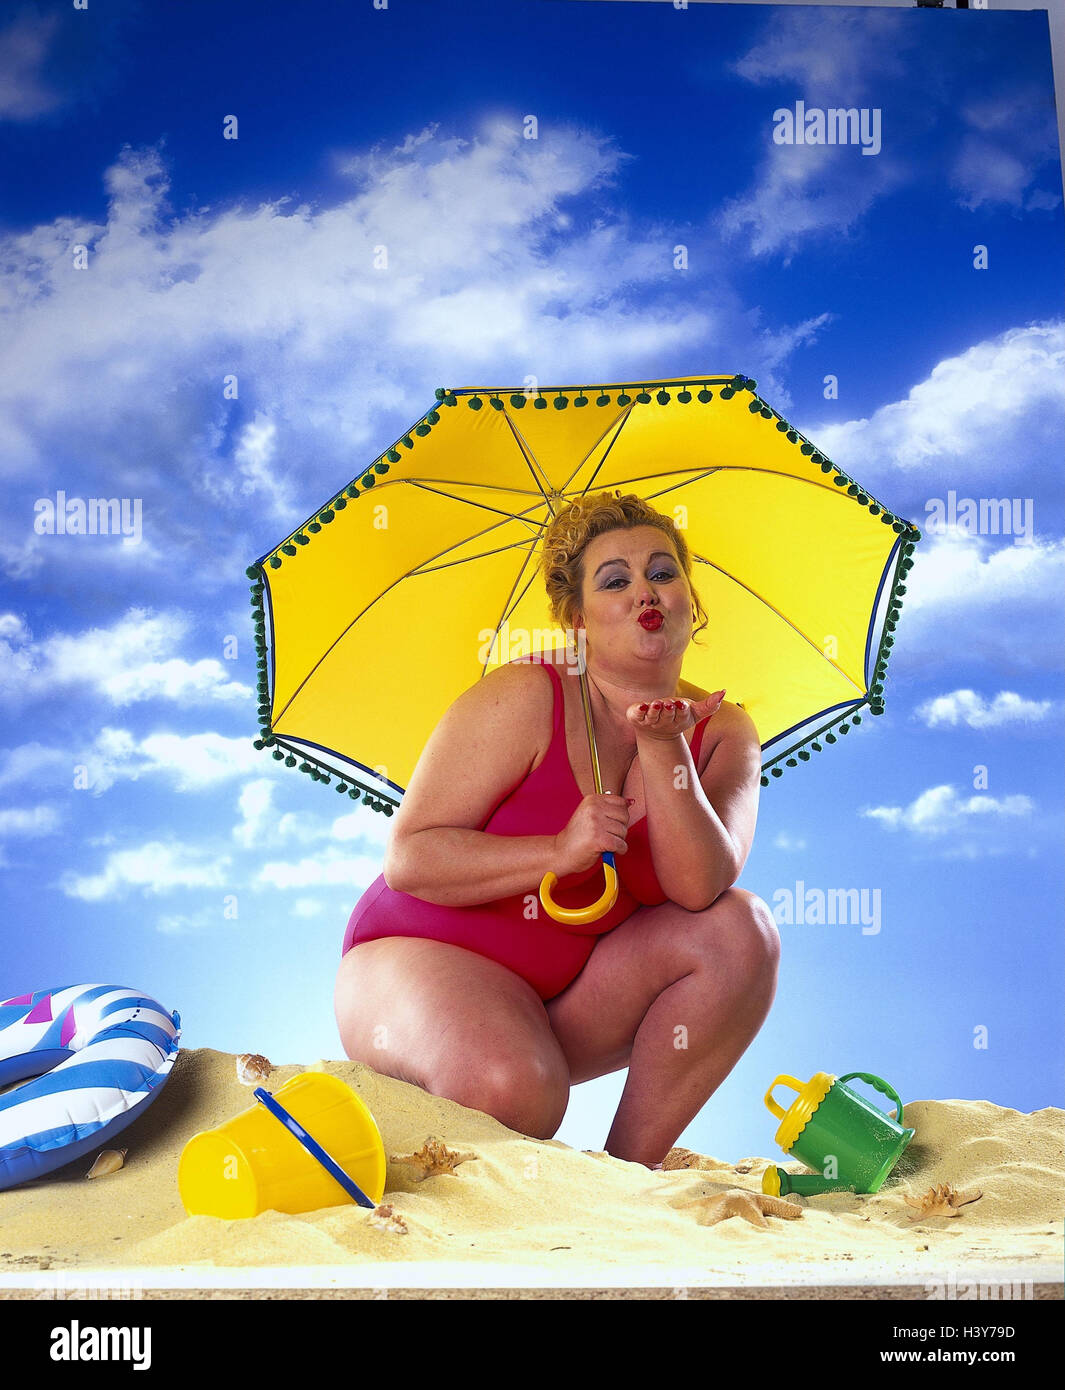 dicke Frau, Badeanzug, gelbe Sonnenschirm am Strand, bewölkter Himmel,  Studio mb 69 A7 Ausschneiden Stockfotografie - Alamy